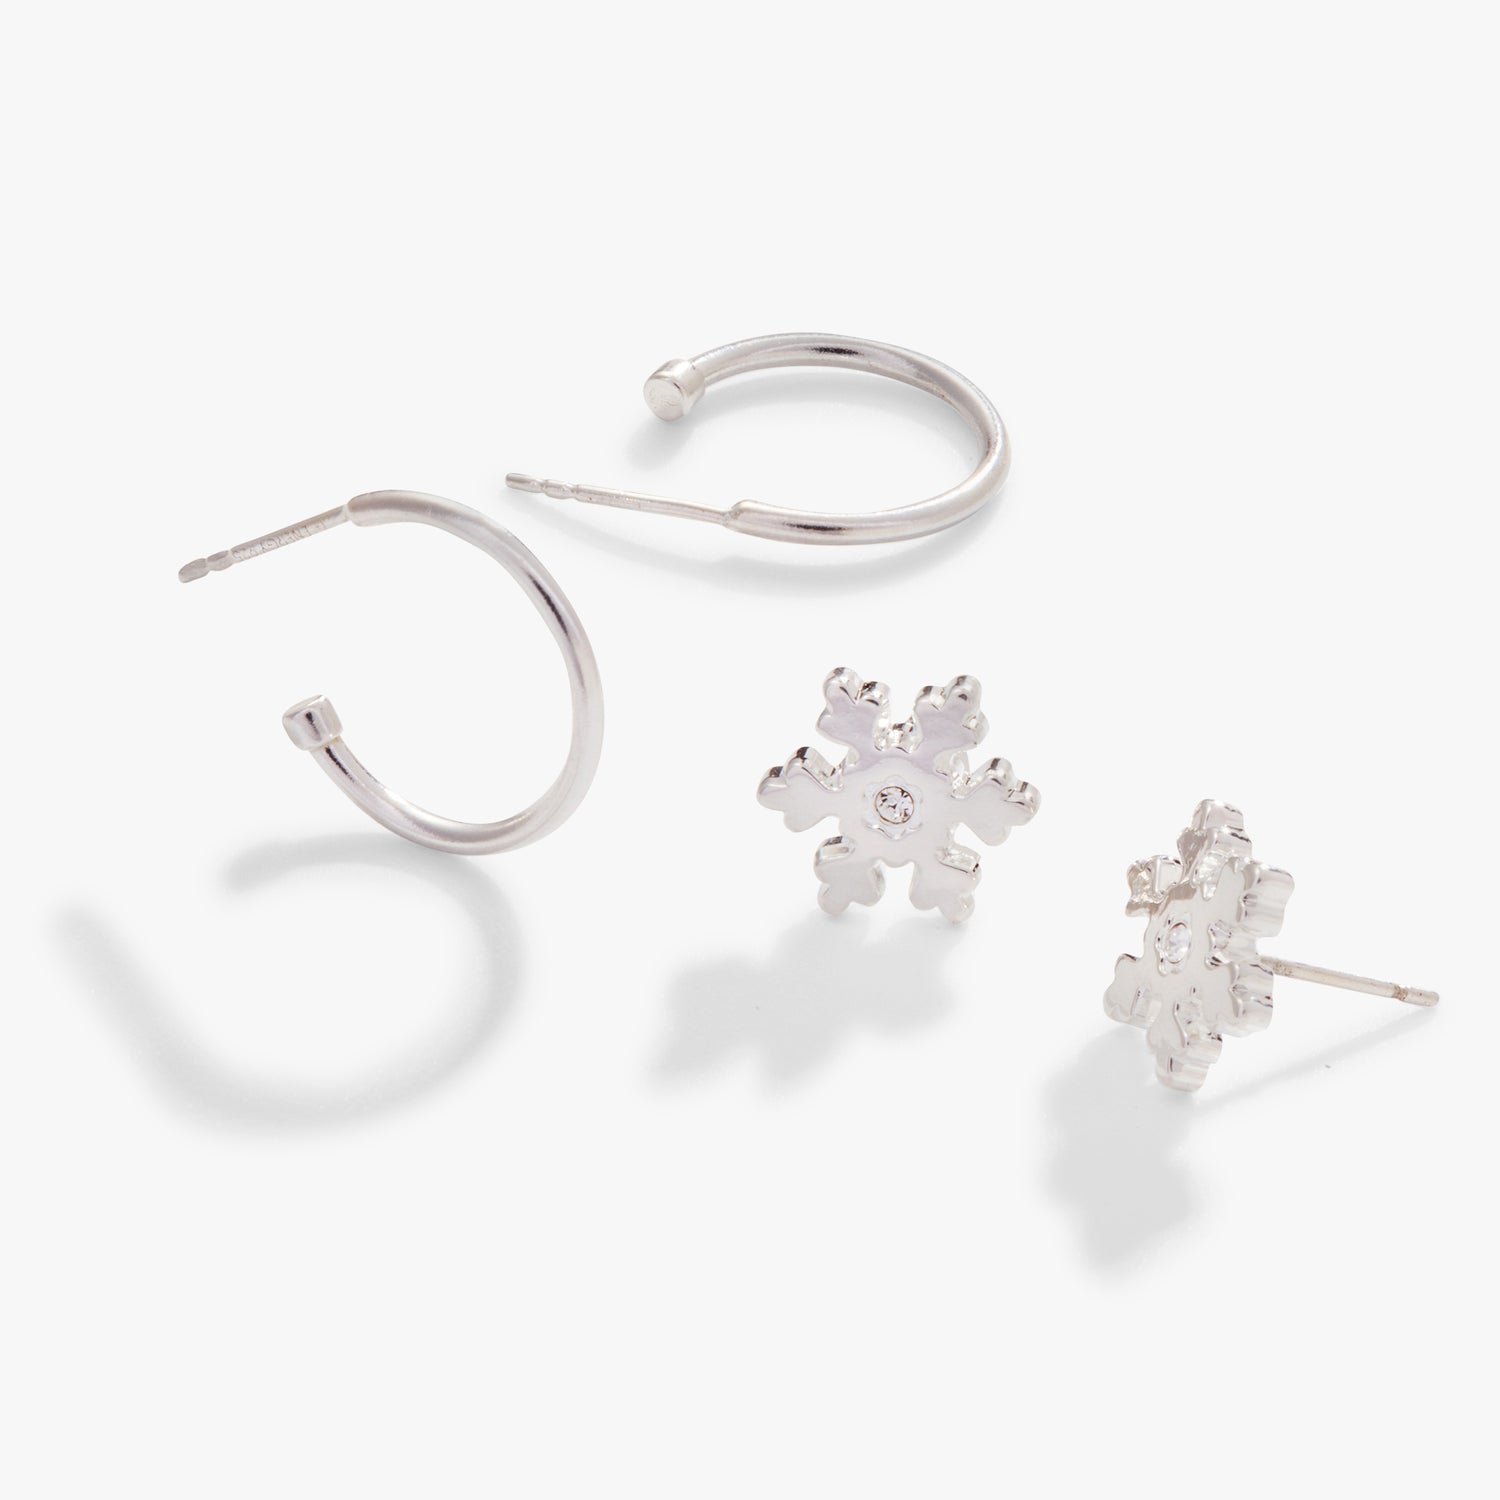 Crystal Snowflake Earrings, Set of 2